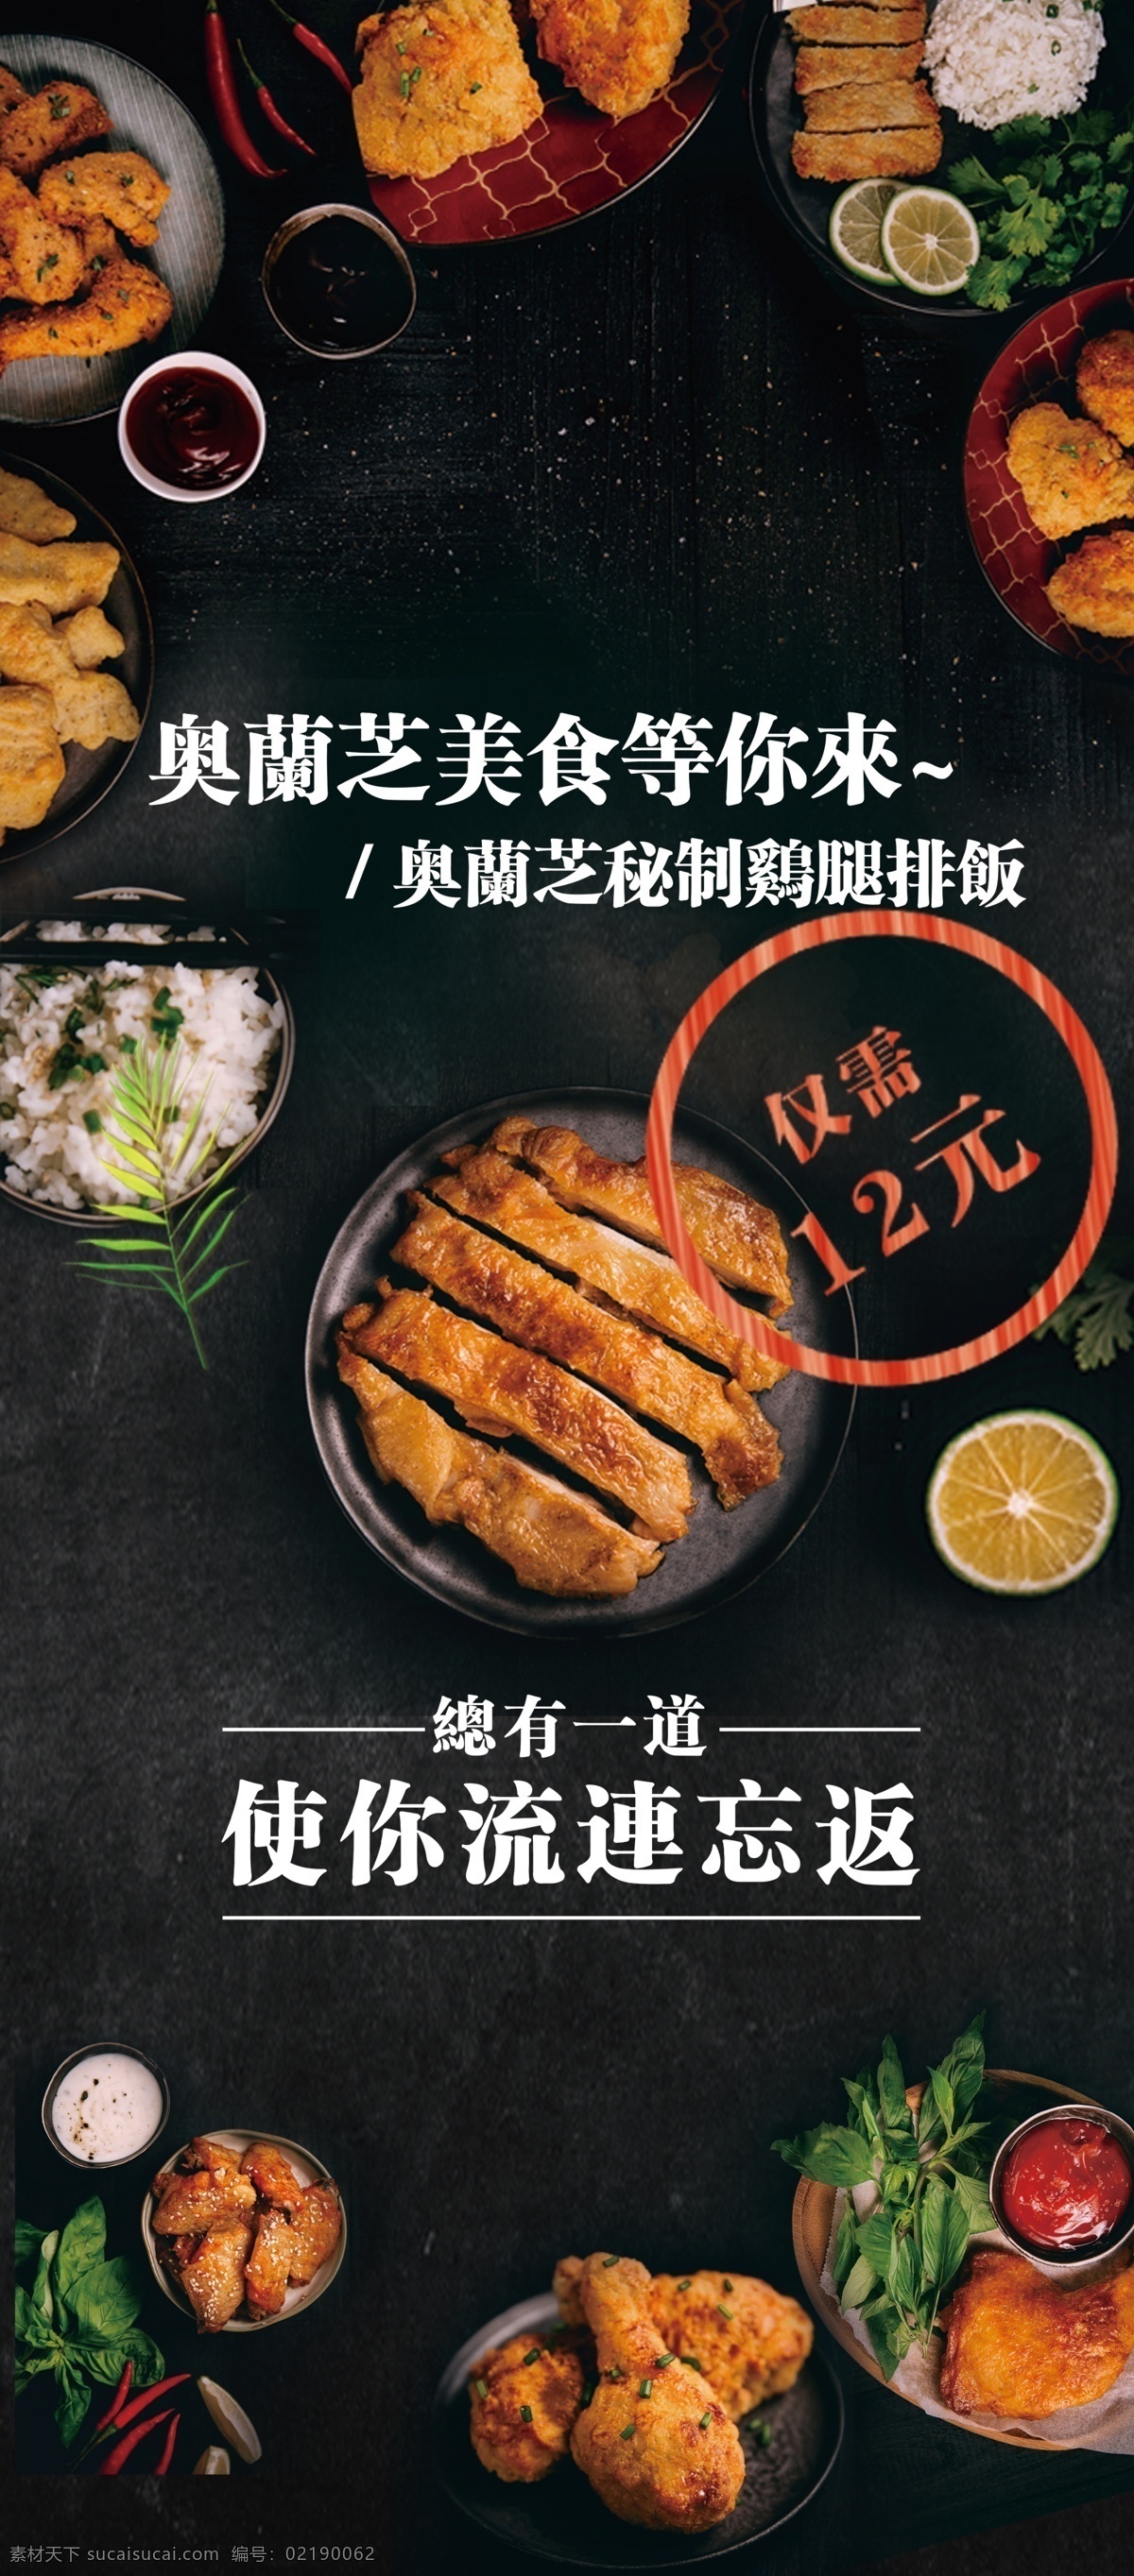 美食 香辣 美味 小 龙虾 促销 海报 餐饮店 美食海报 最新 小龙虾海报 畅享美食 美食的诱惑